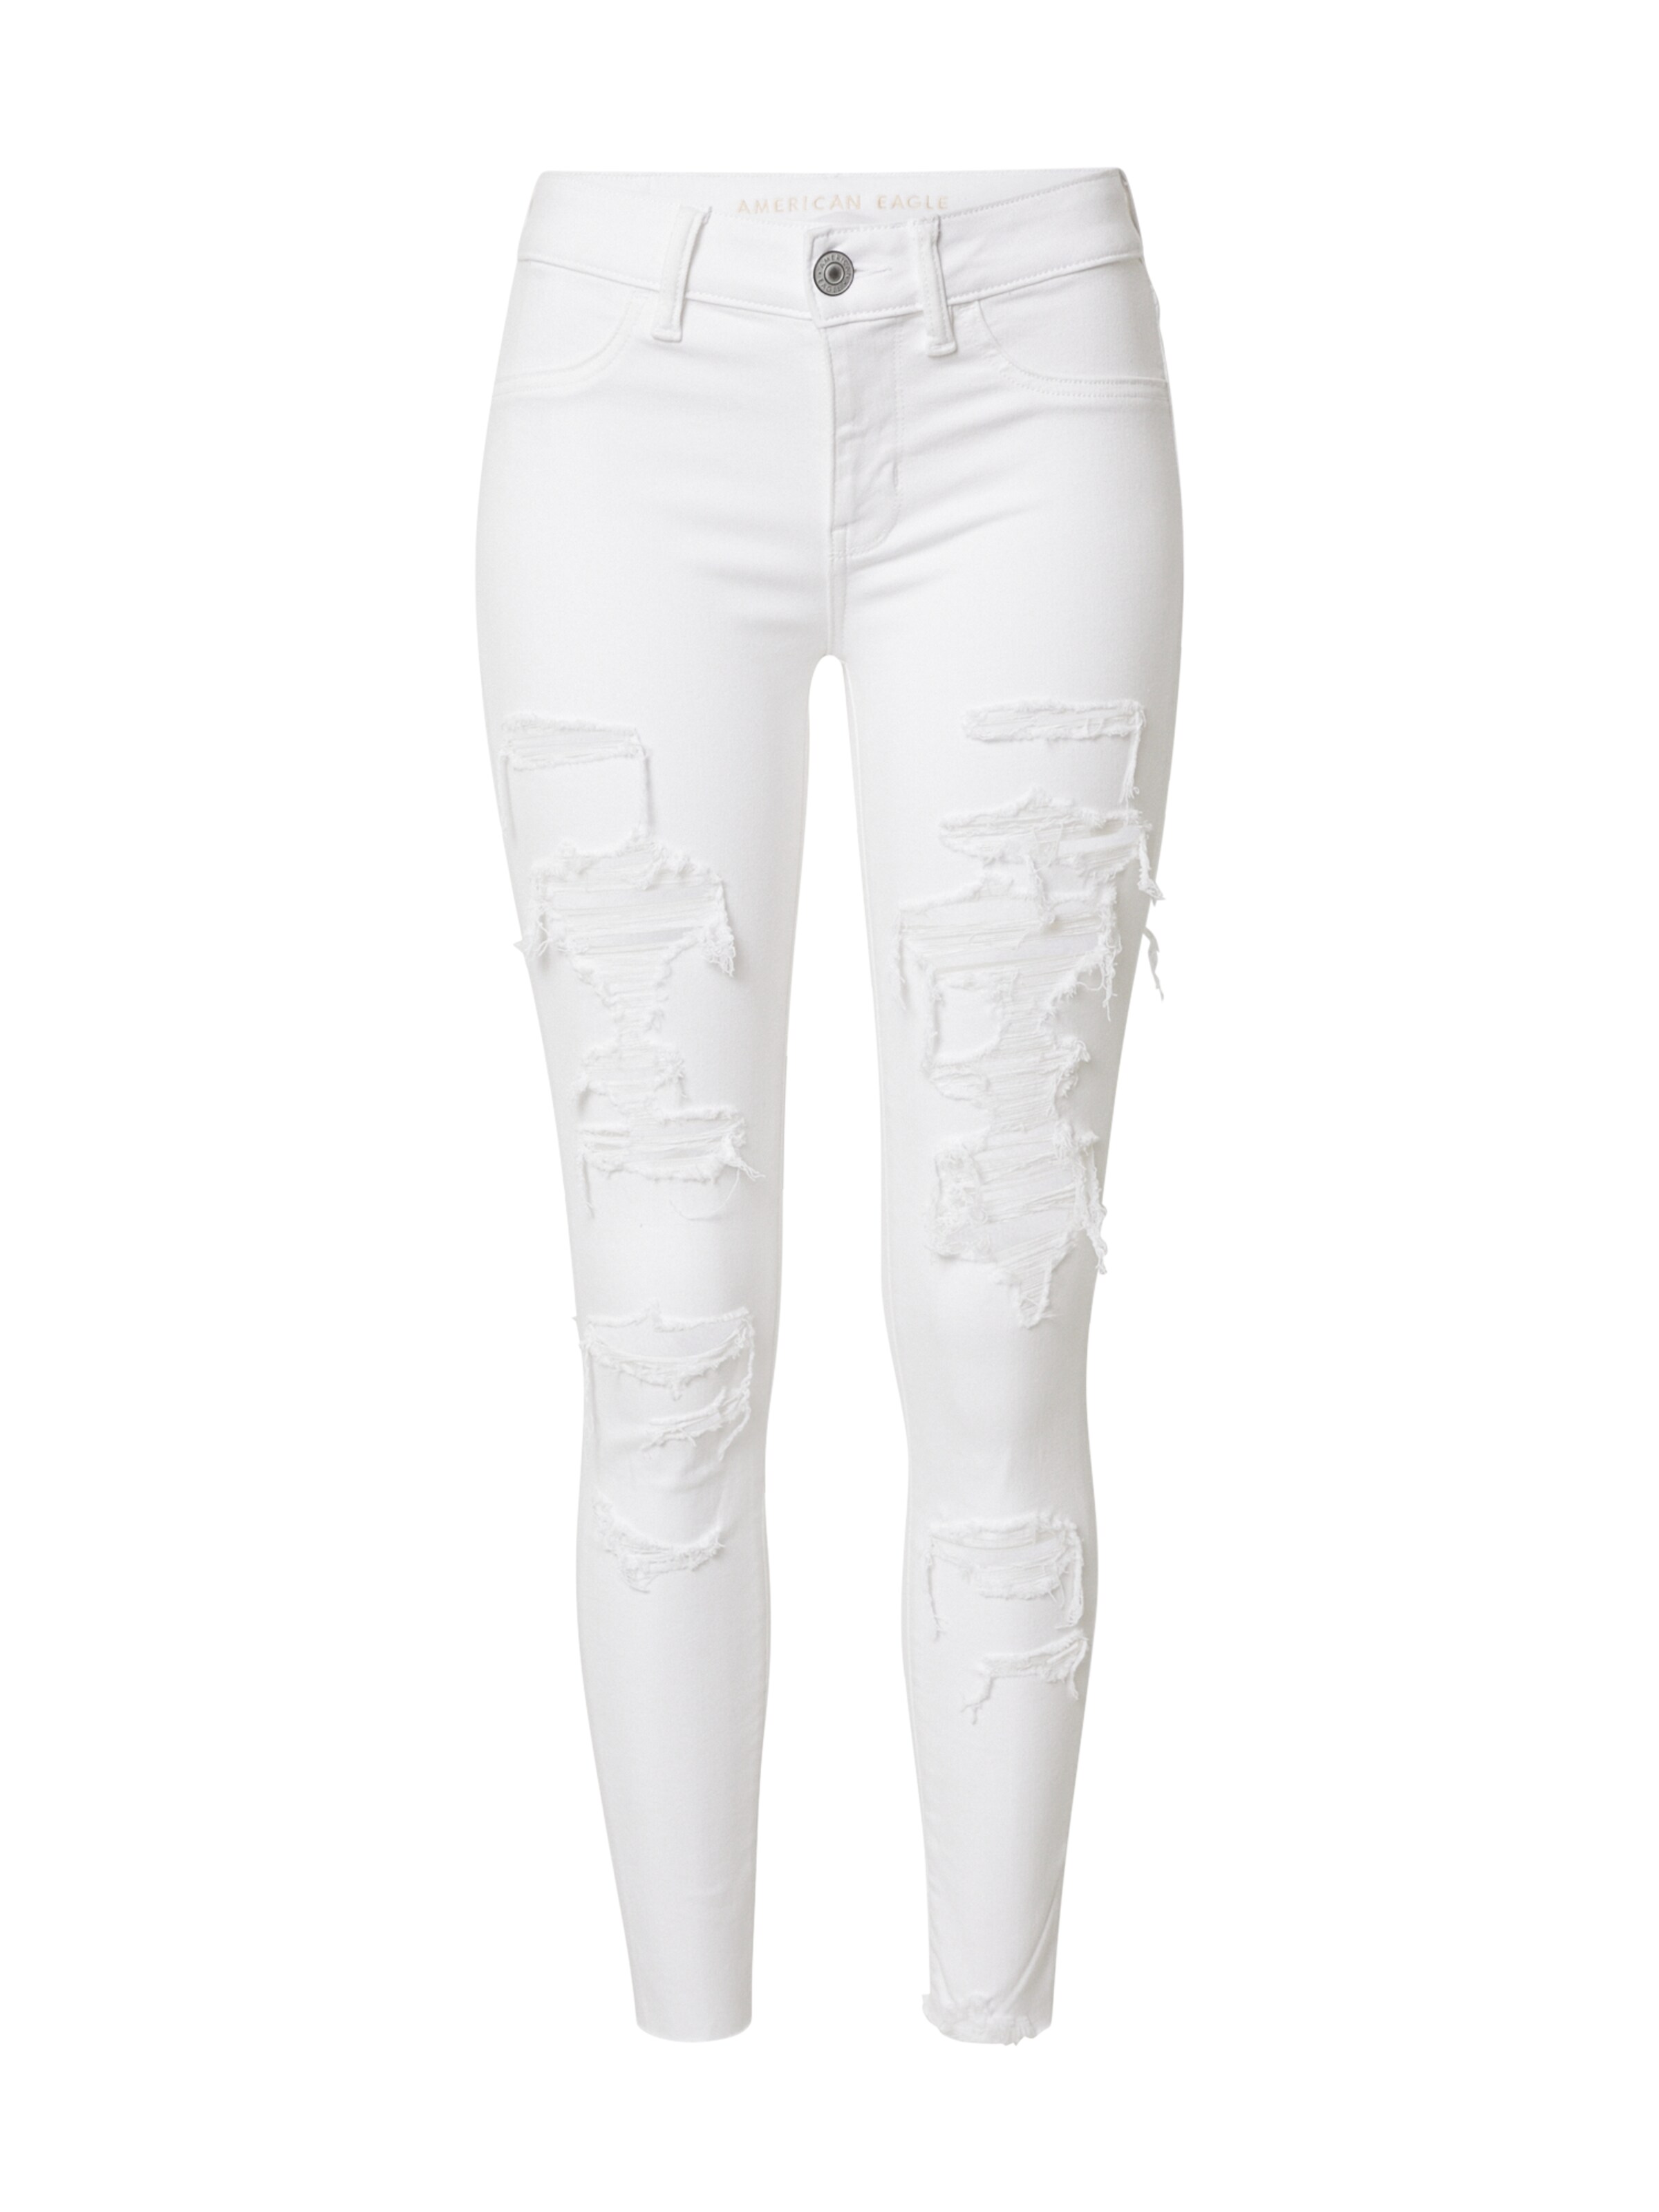 Frauen Jeans American Eagle Jeans in Weiß - UR43410